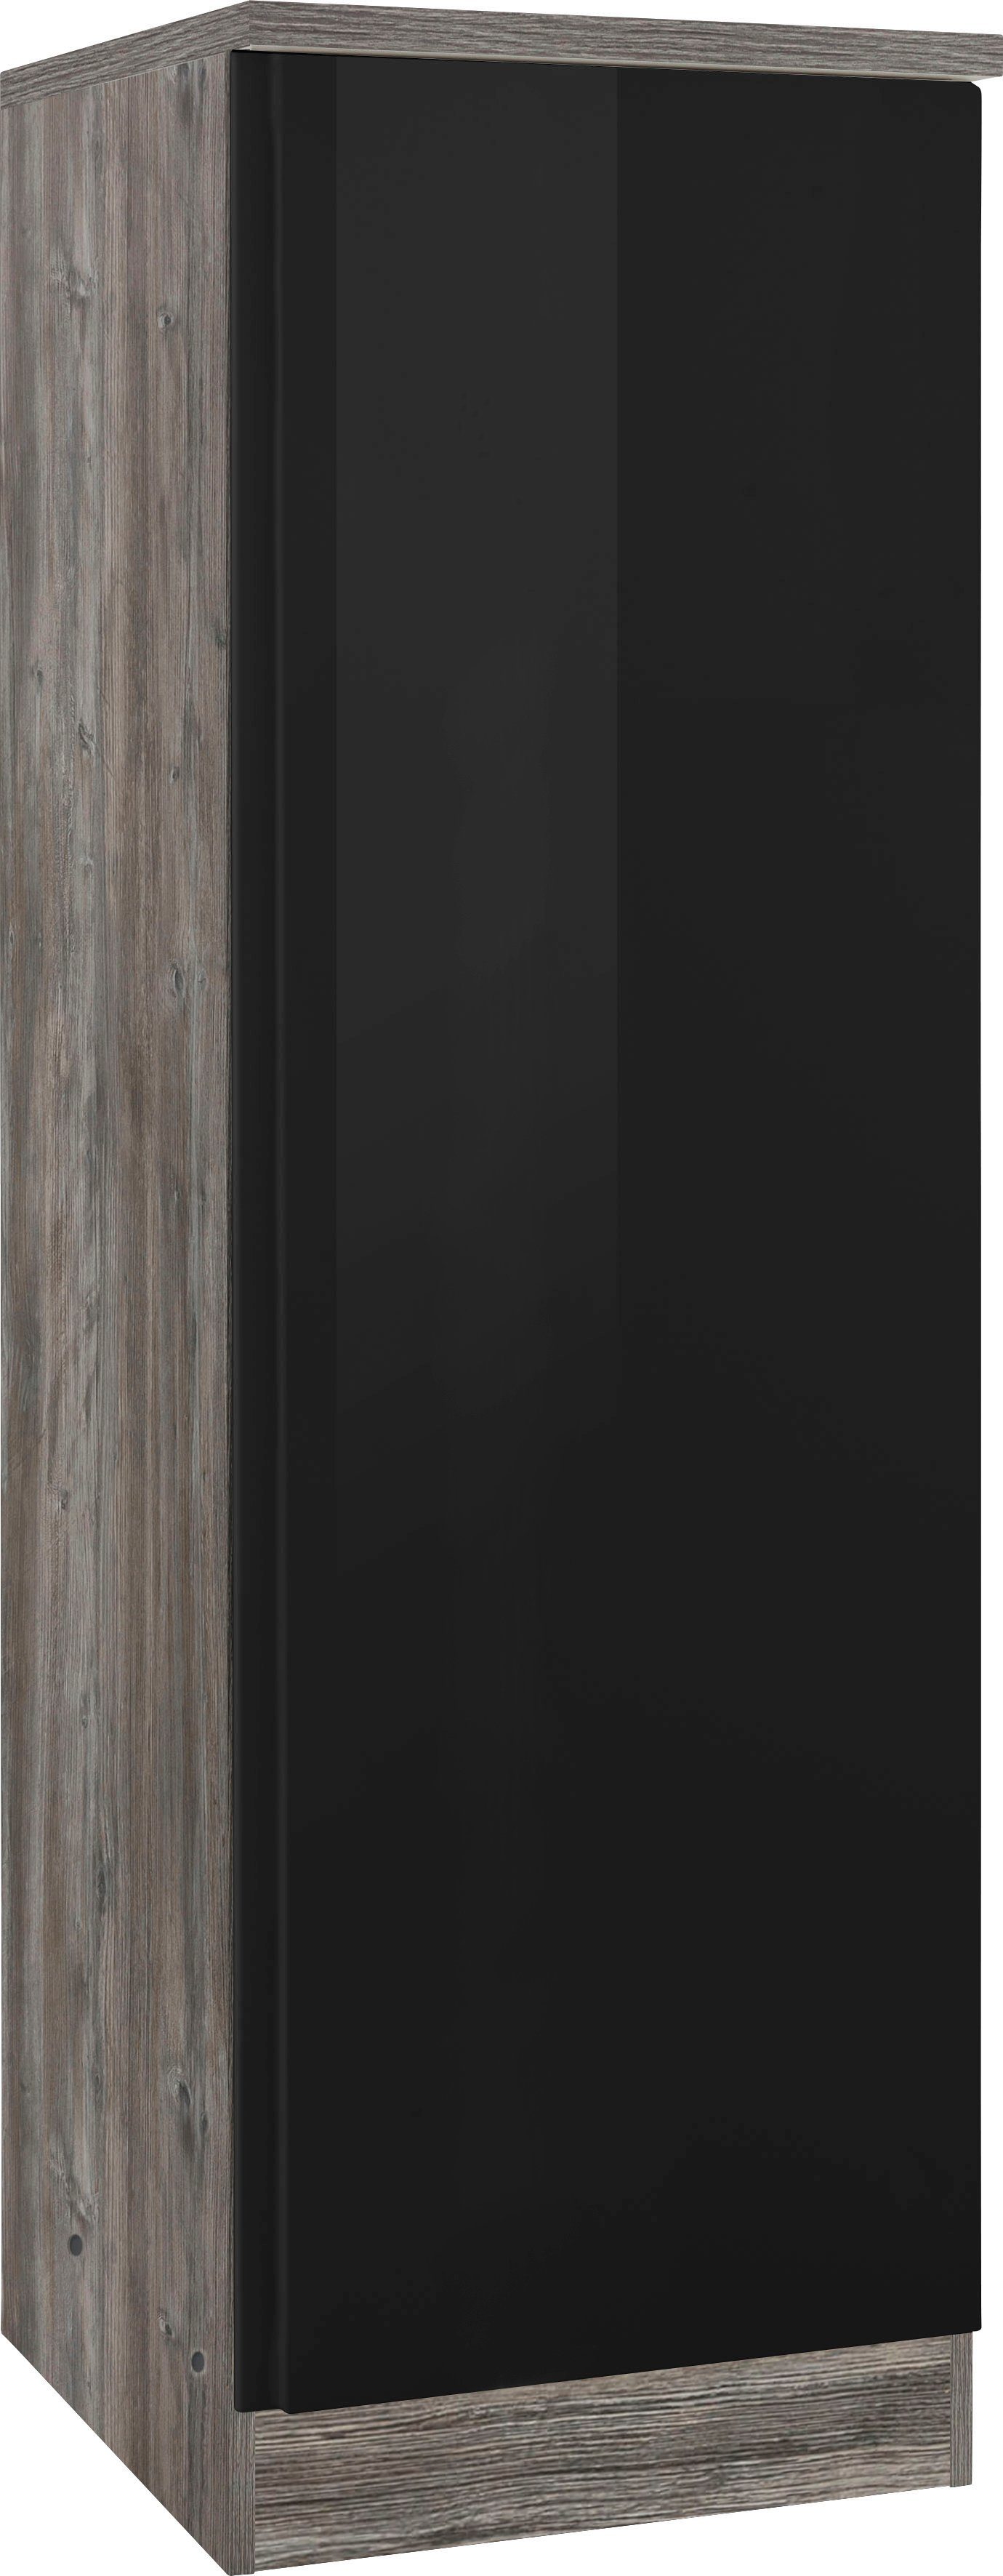 HELD MÖBEL 50 cm breit, Hochglanz Seitenschrank | eichevintage Stauraum viel für Virginia schwarz